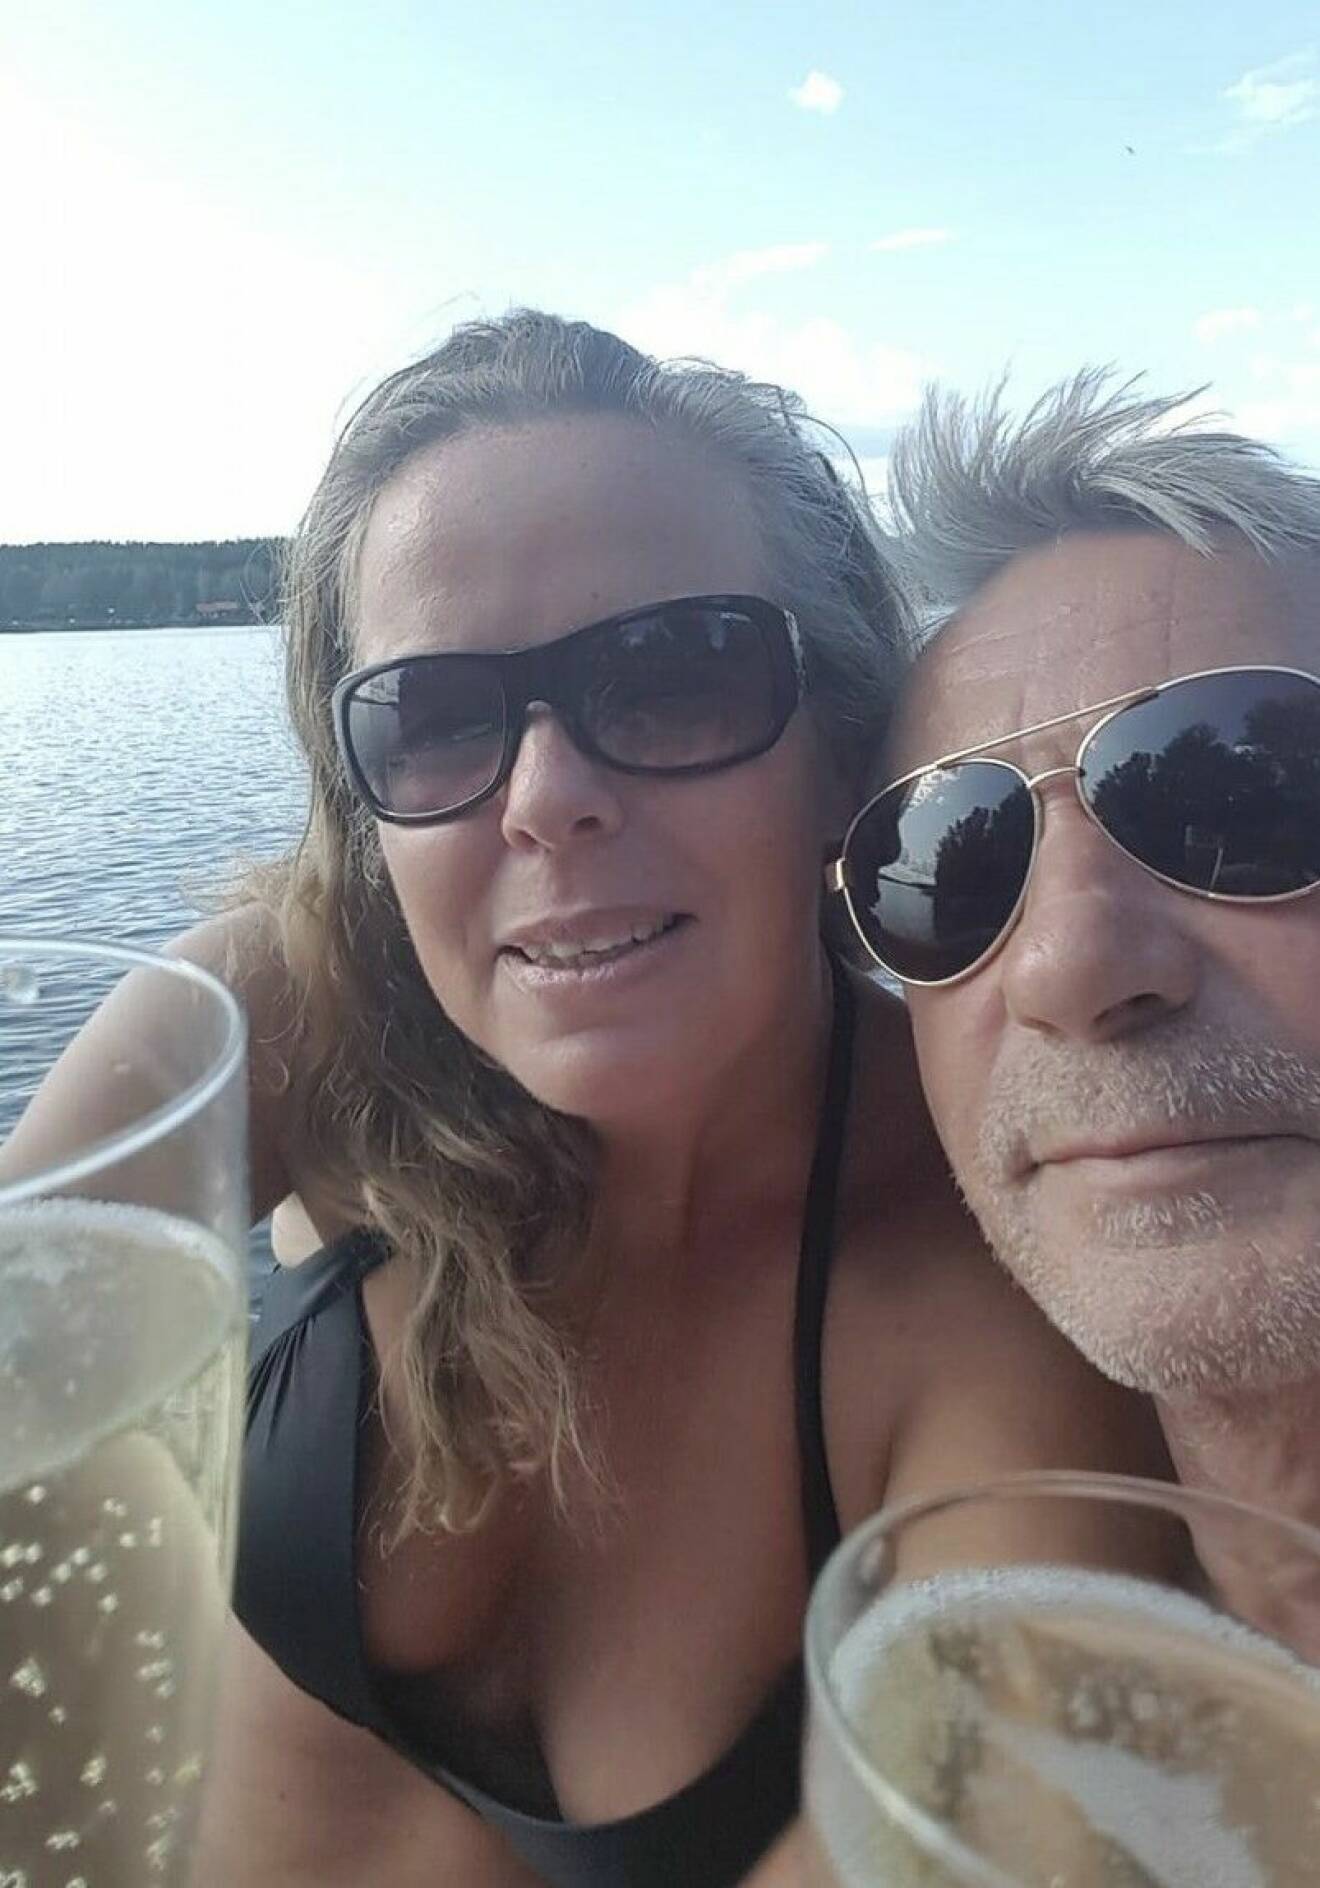 Annis och Frank tätt ihop vid vattnet, i solglasögon och med kall dricka, en varm sommardag innan sjukdomen slog till.